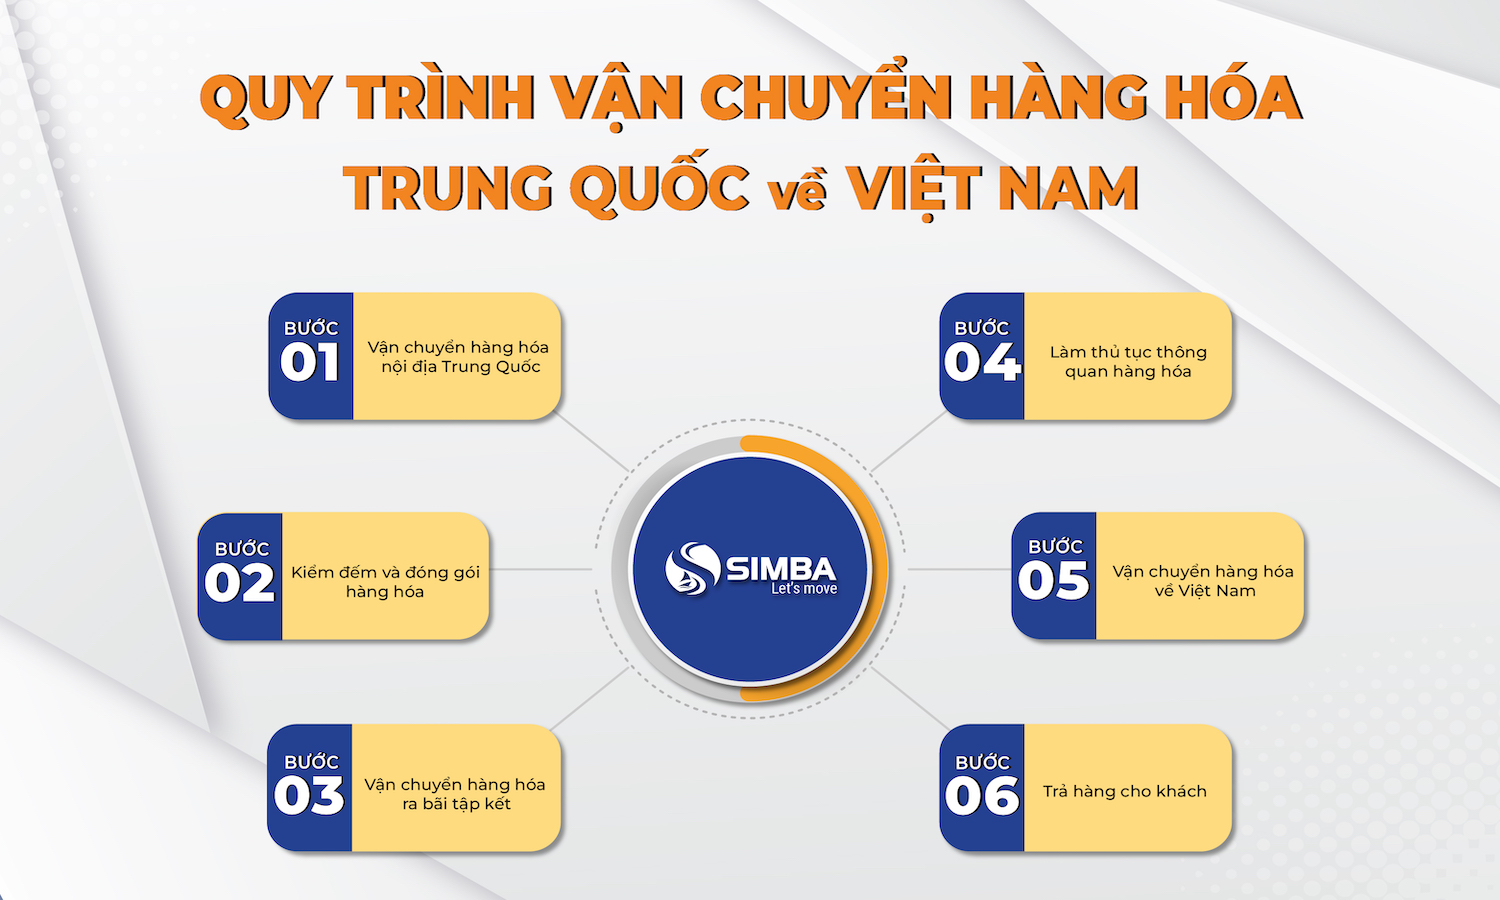 quy trình vận chuyển hàng hoá từ Trung Quốc về Việt Nam